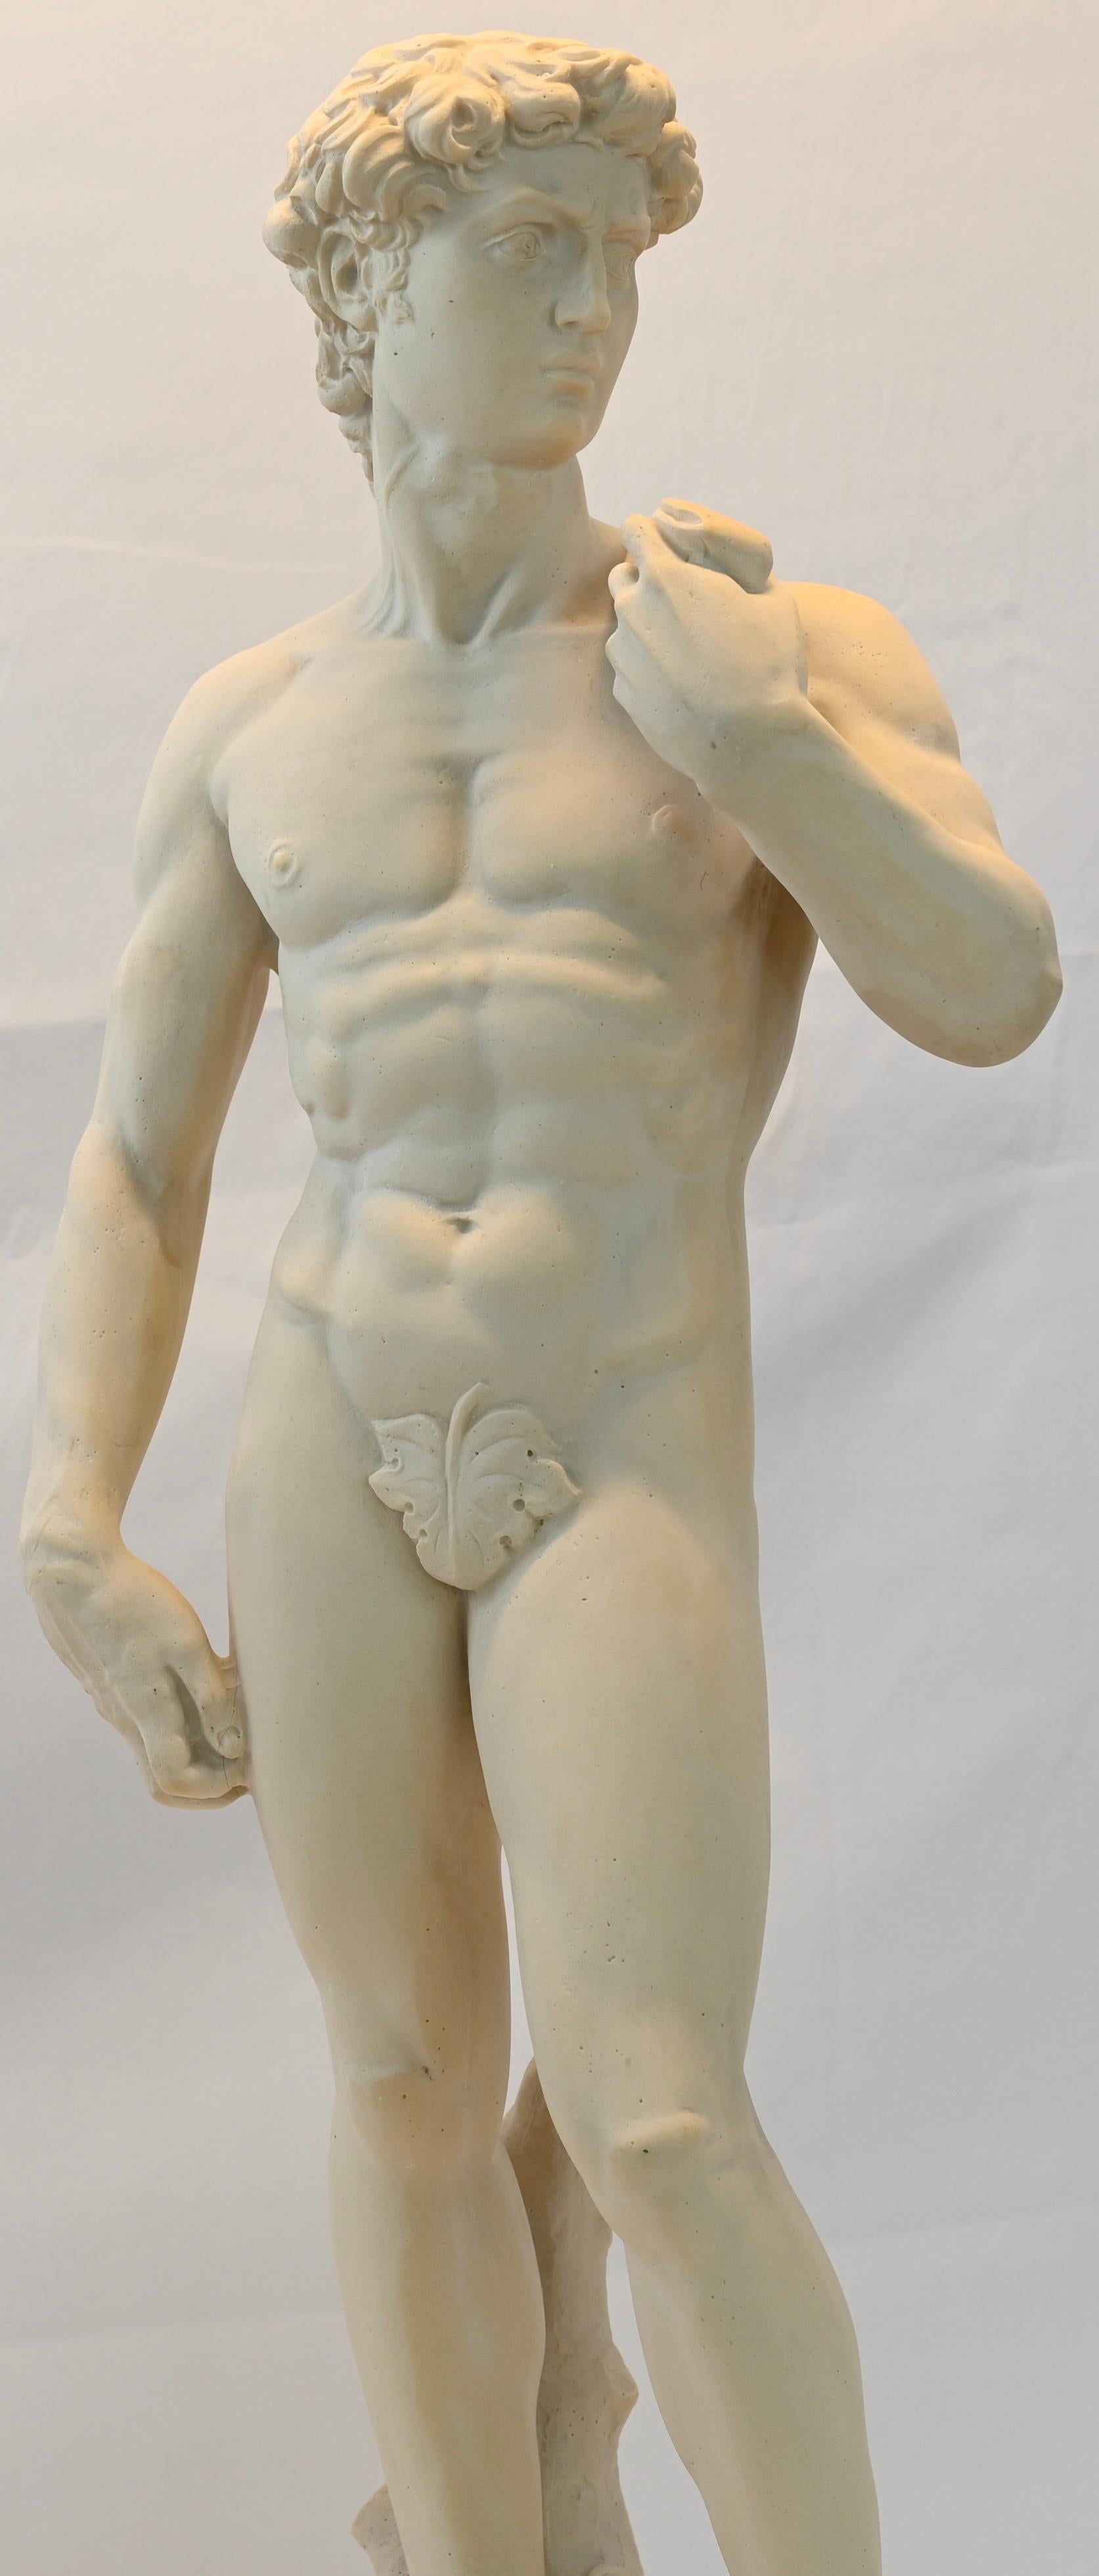 Atemberaubende römische nackte männliche Marmorskulptur Italienisch oder Statue von David.
Gut ausgeführte und wunderbar proportionierte Figur des jugendlichen David, kopiert nach dem Original von Michelangelo in der Galleria dell'Accademia,